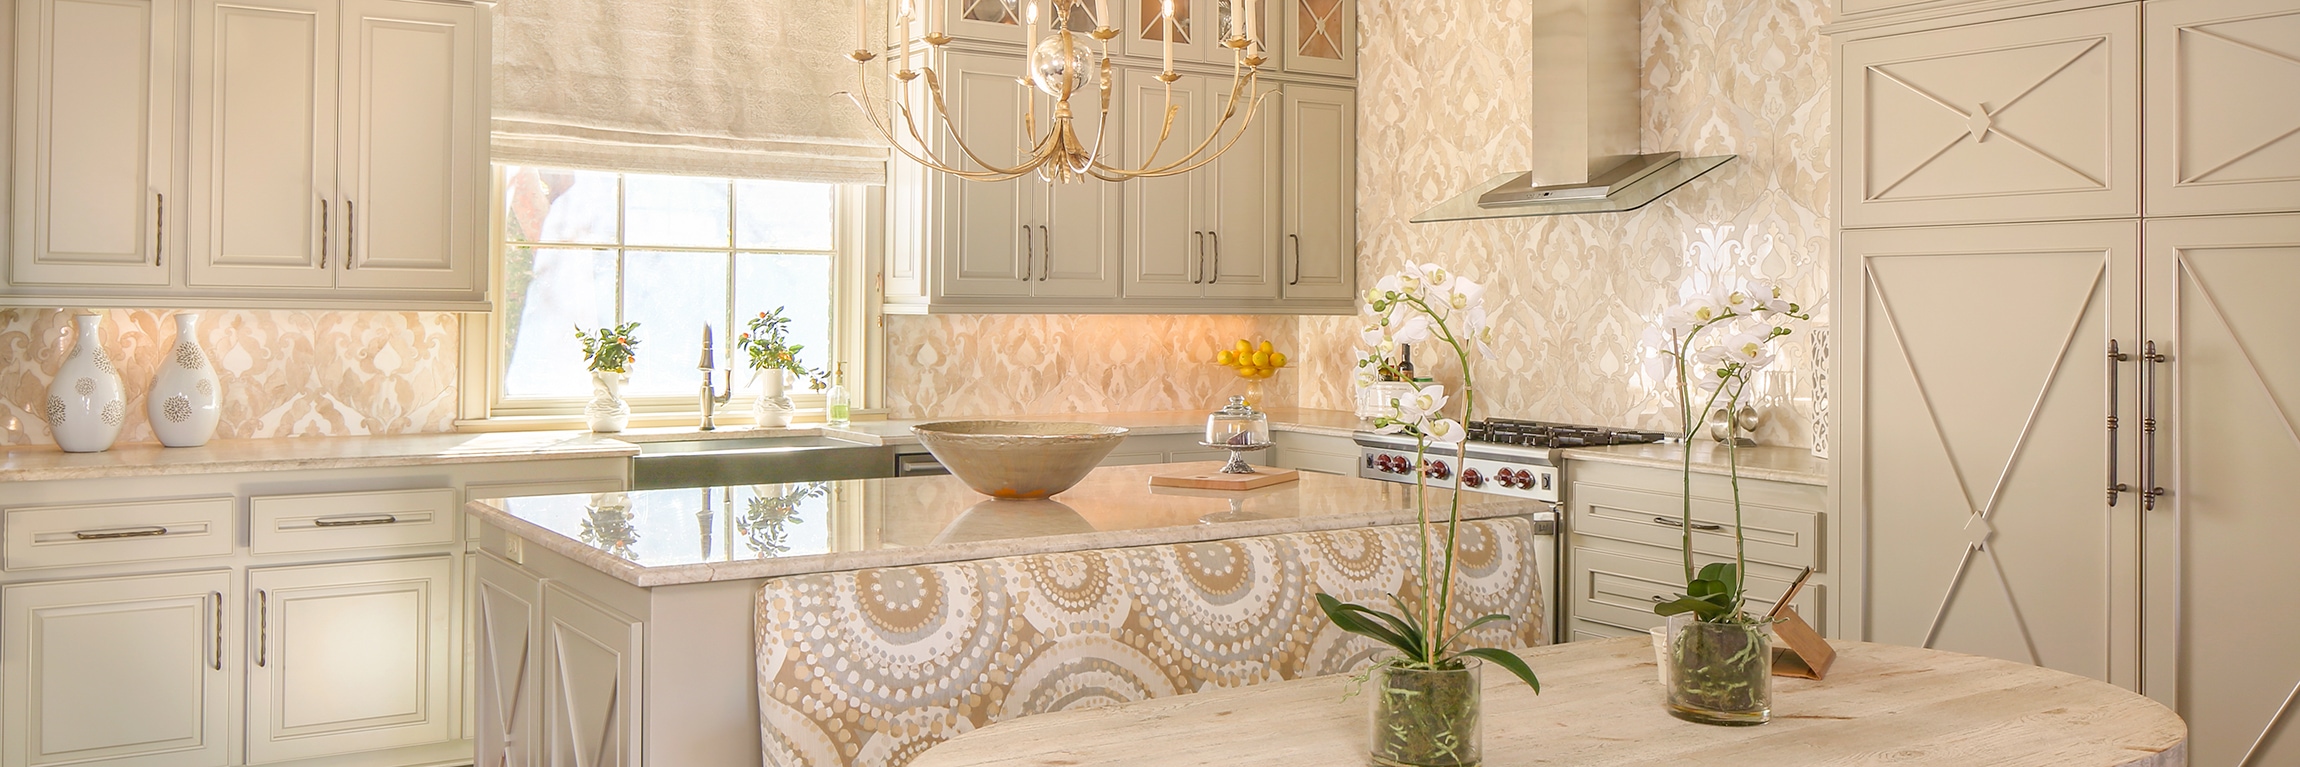 Carrelage cuisine marbre : un choix élégant et durable pour votre intérieur